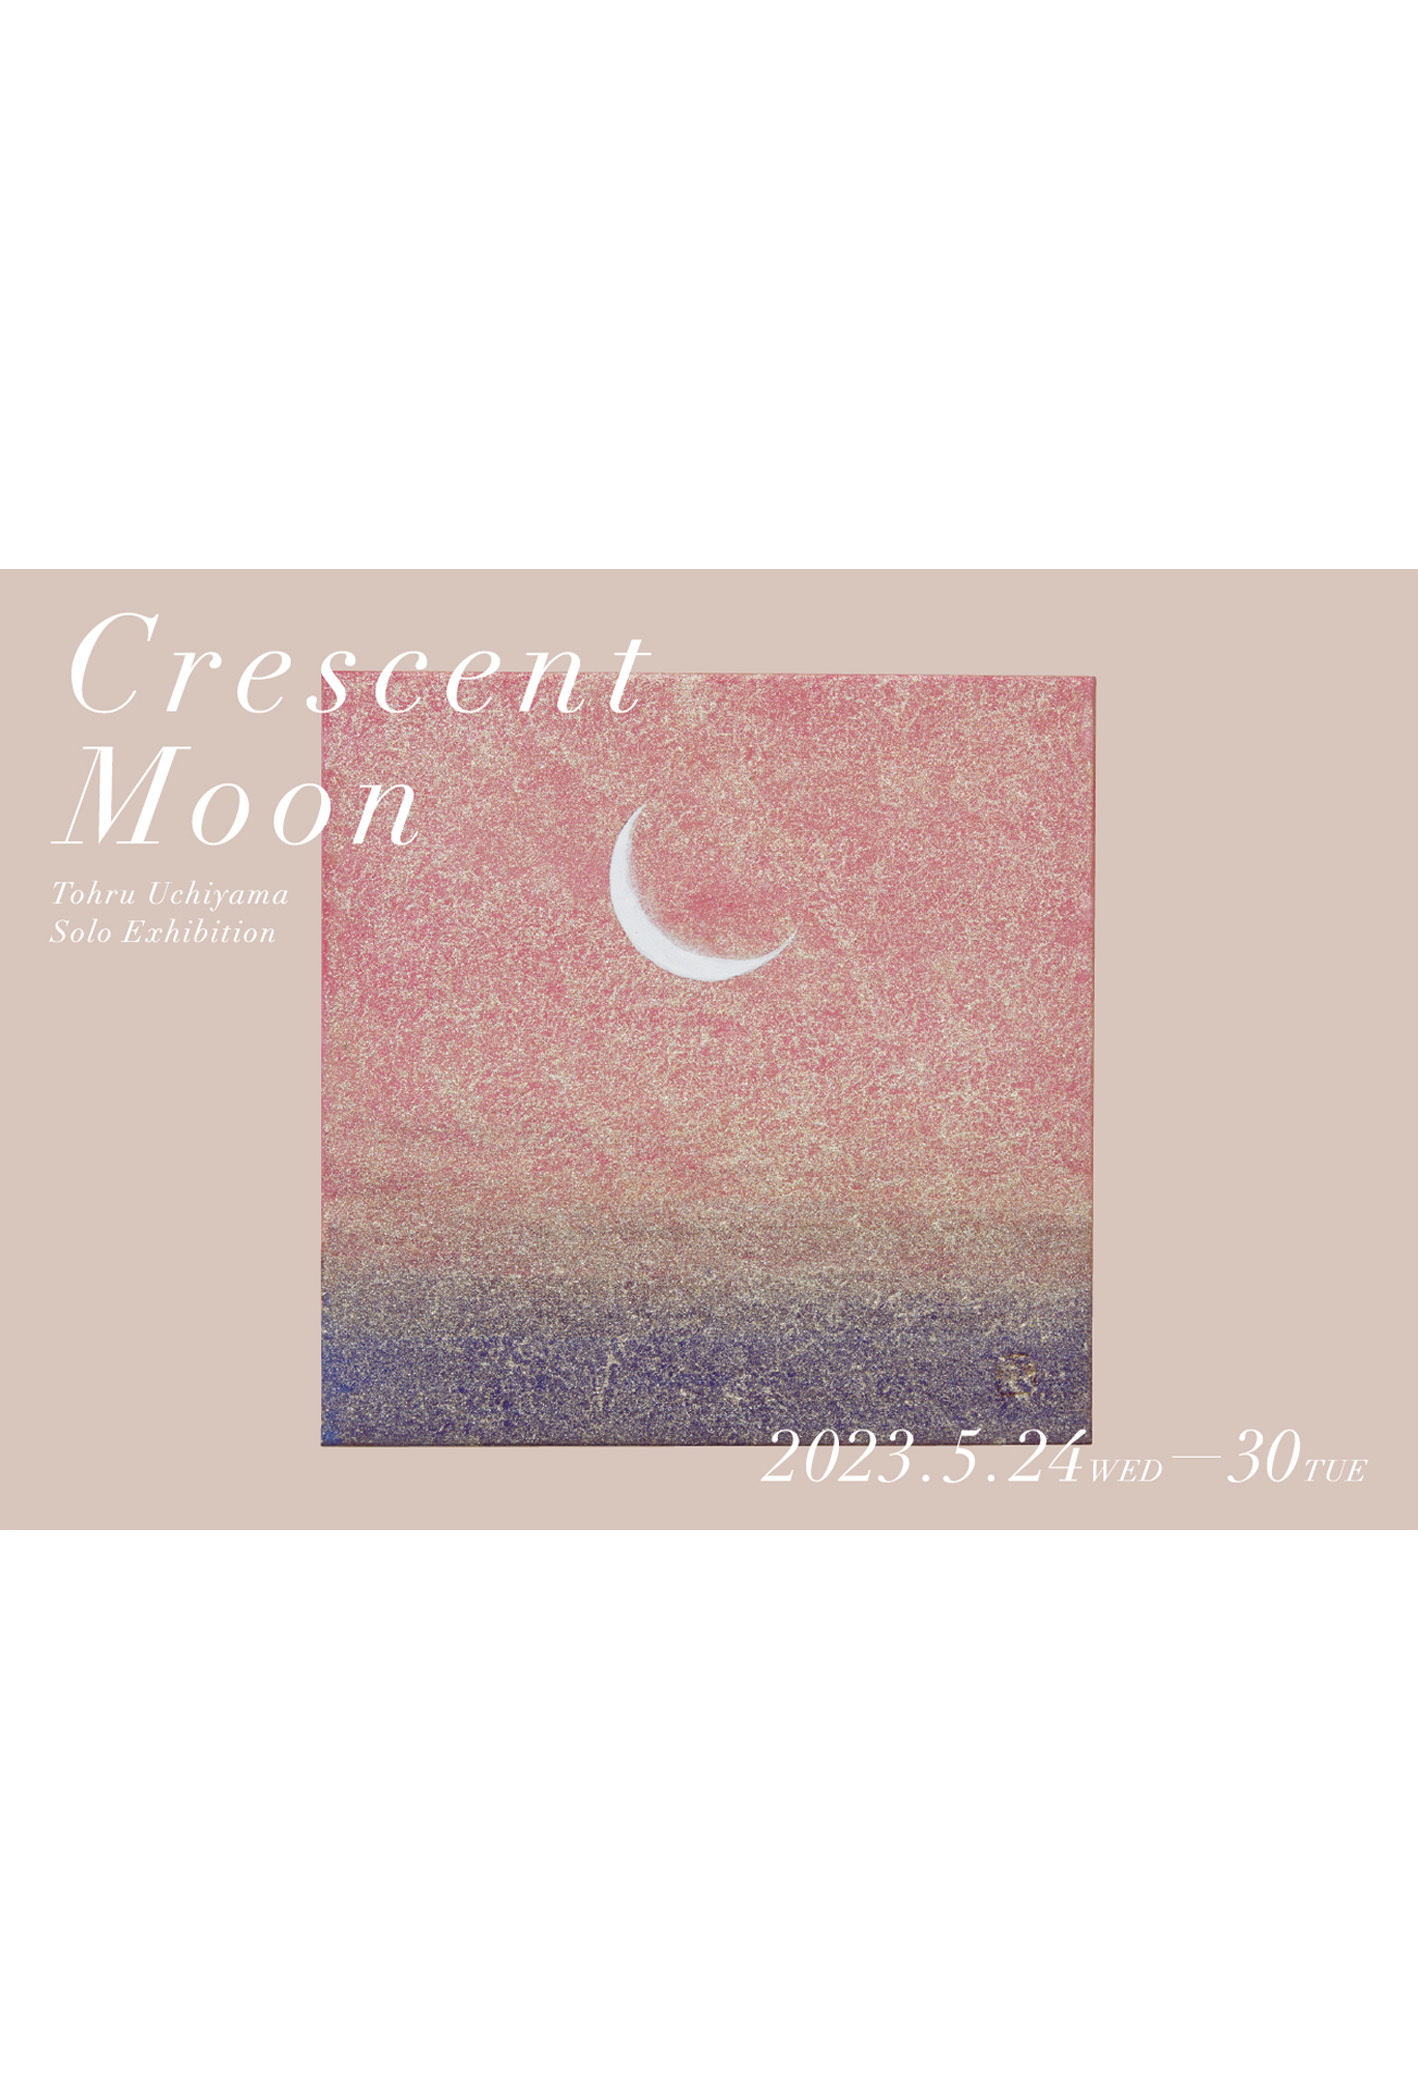 阪急神戸にて開催の日本画家 内山徹の個展「Crescent Moon」のメインビジュアル